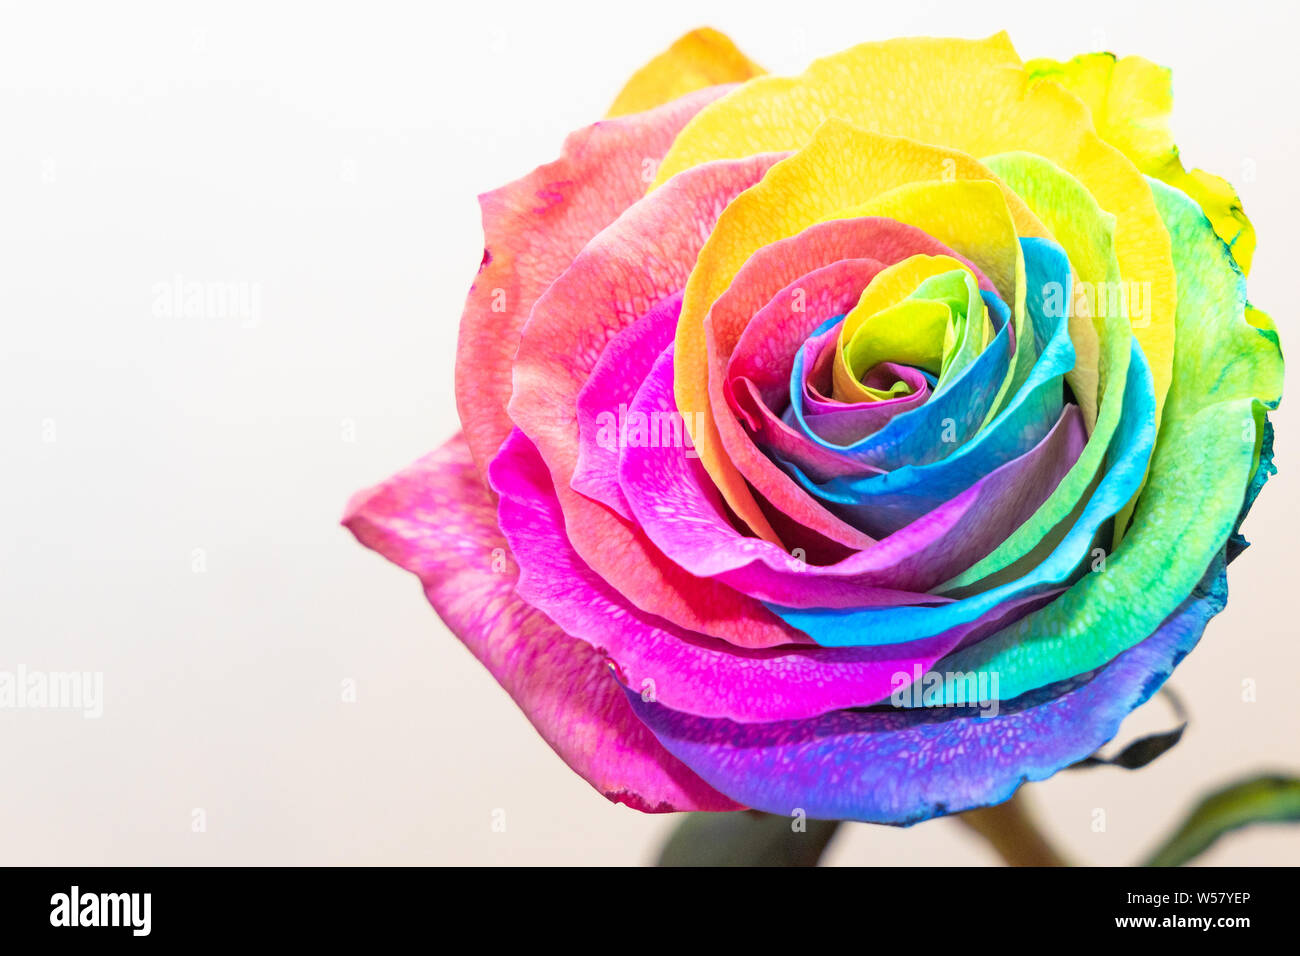 Regenbogen Rose vor weißem Hintergrund Stock Photo